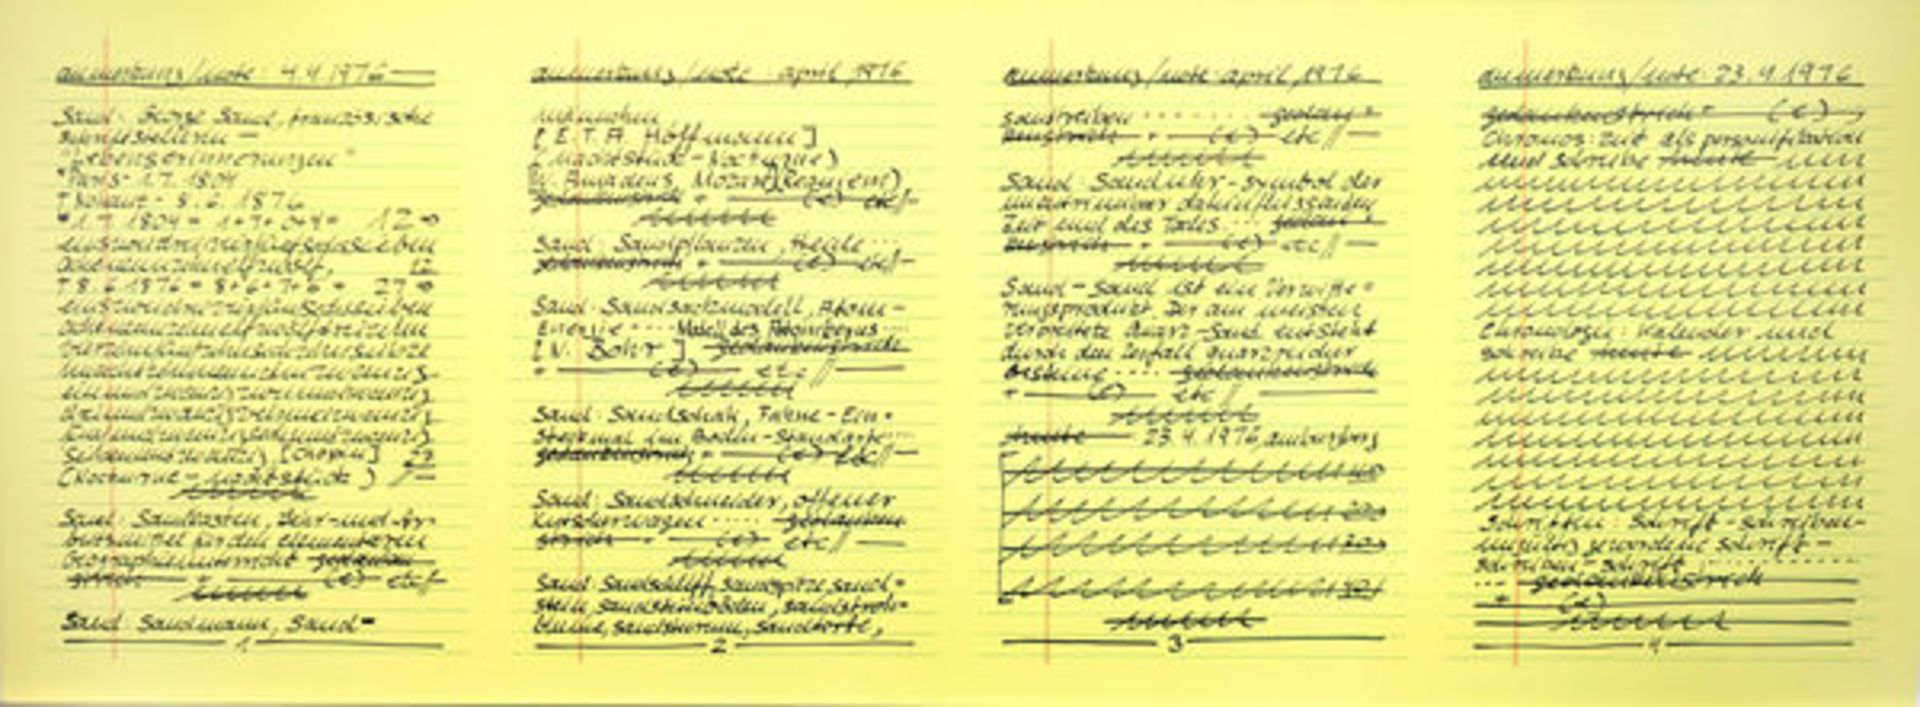 Darboven, Hanne 3 Blatt Offsetdrucke auf gelbem Papier Aufzeichnungen 25.3. 1975 / Aufzeichnungen - Image 3 of 3